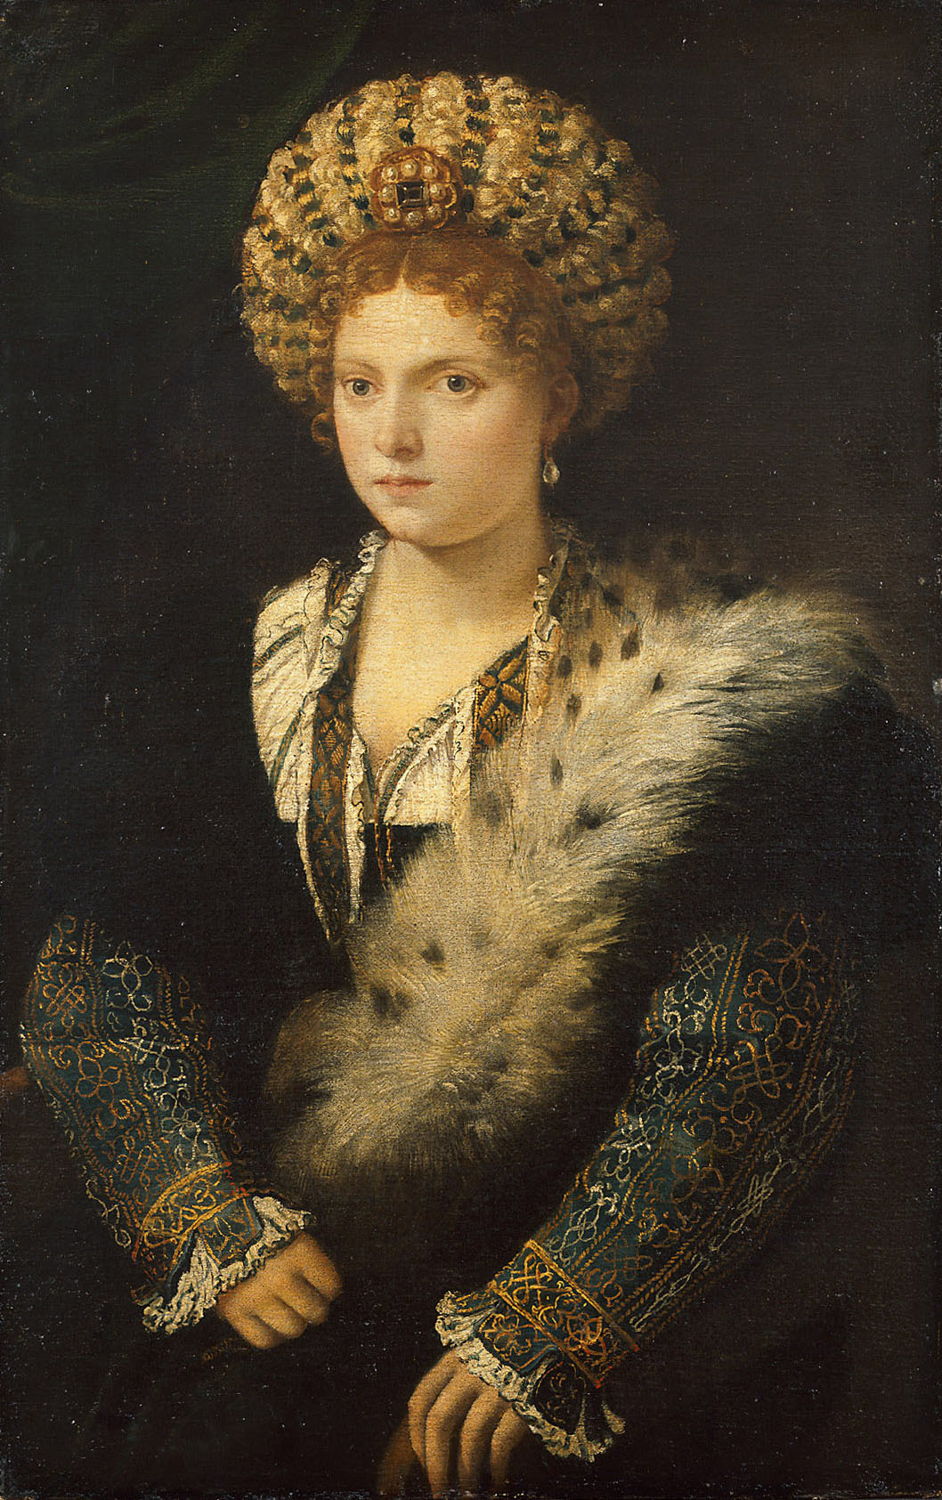 Le Titien, Portrait d’Isabelle d’Este, tableau, 
Vienne, Kunsthistorisches Museum